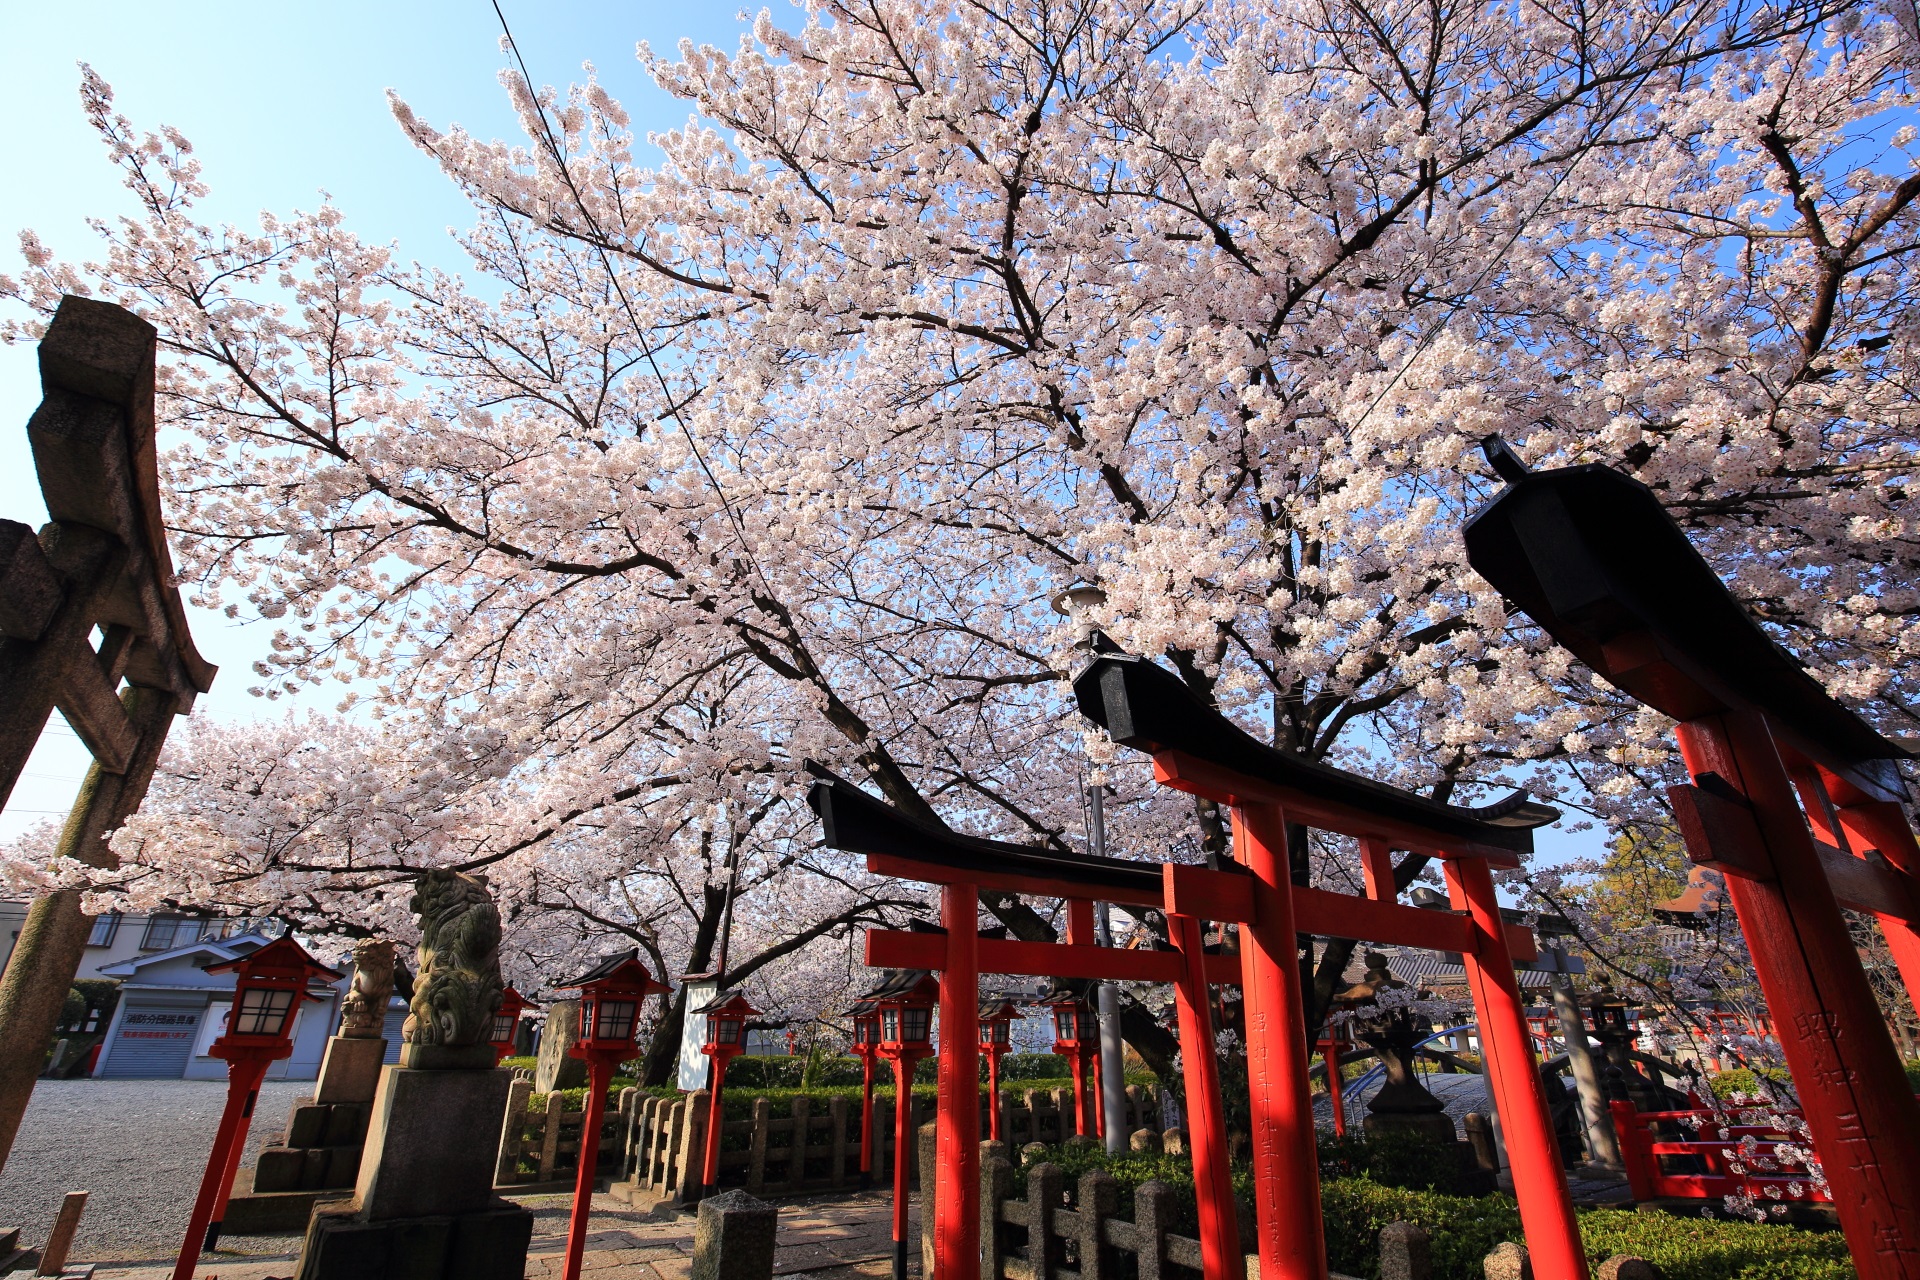 六孫王神社の睦弥稲荷神社の赤い鳥居と桜